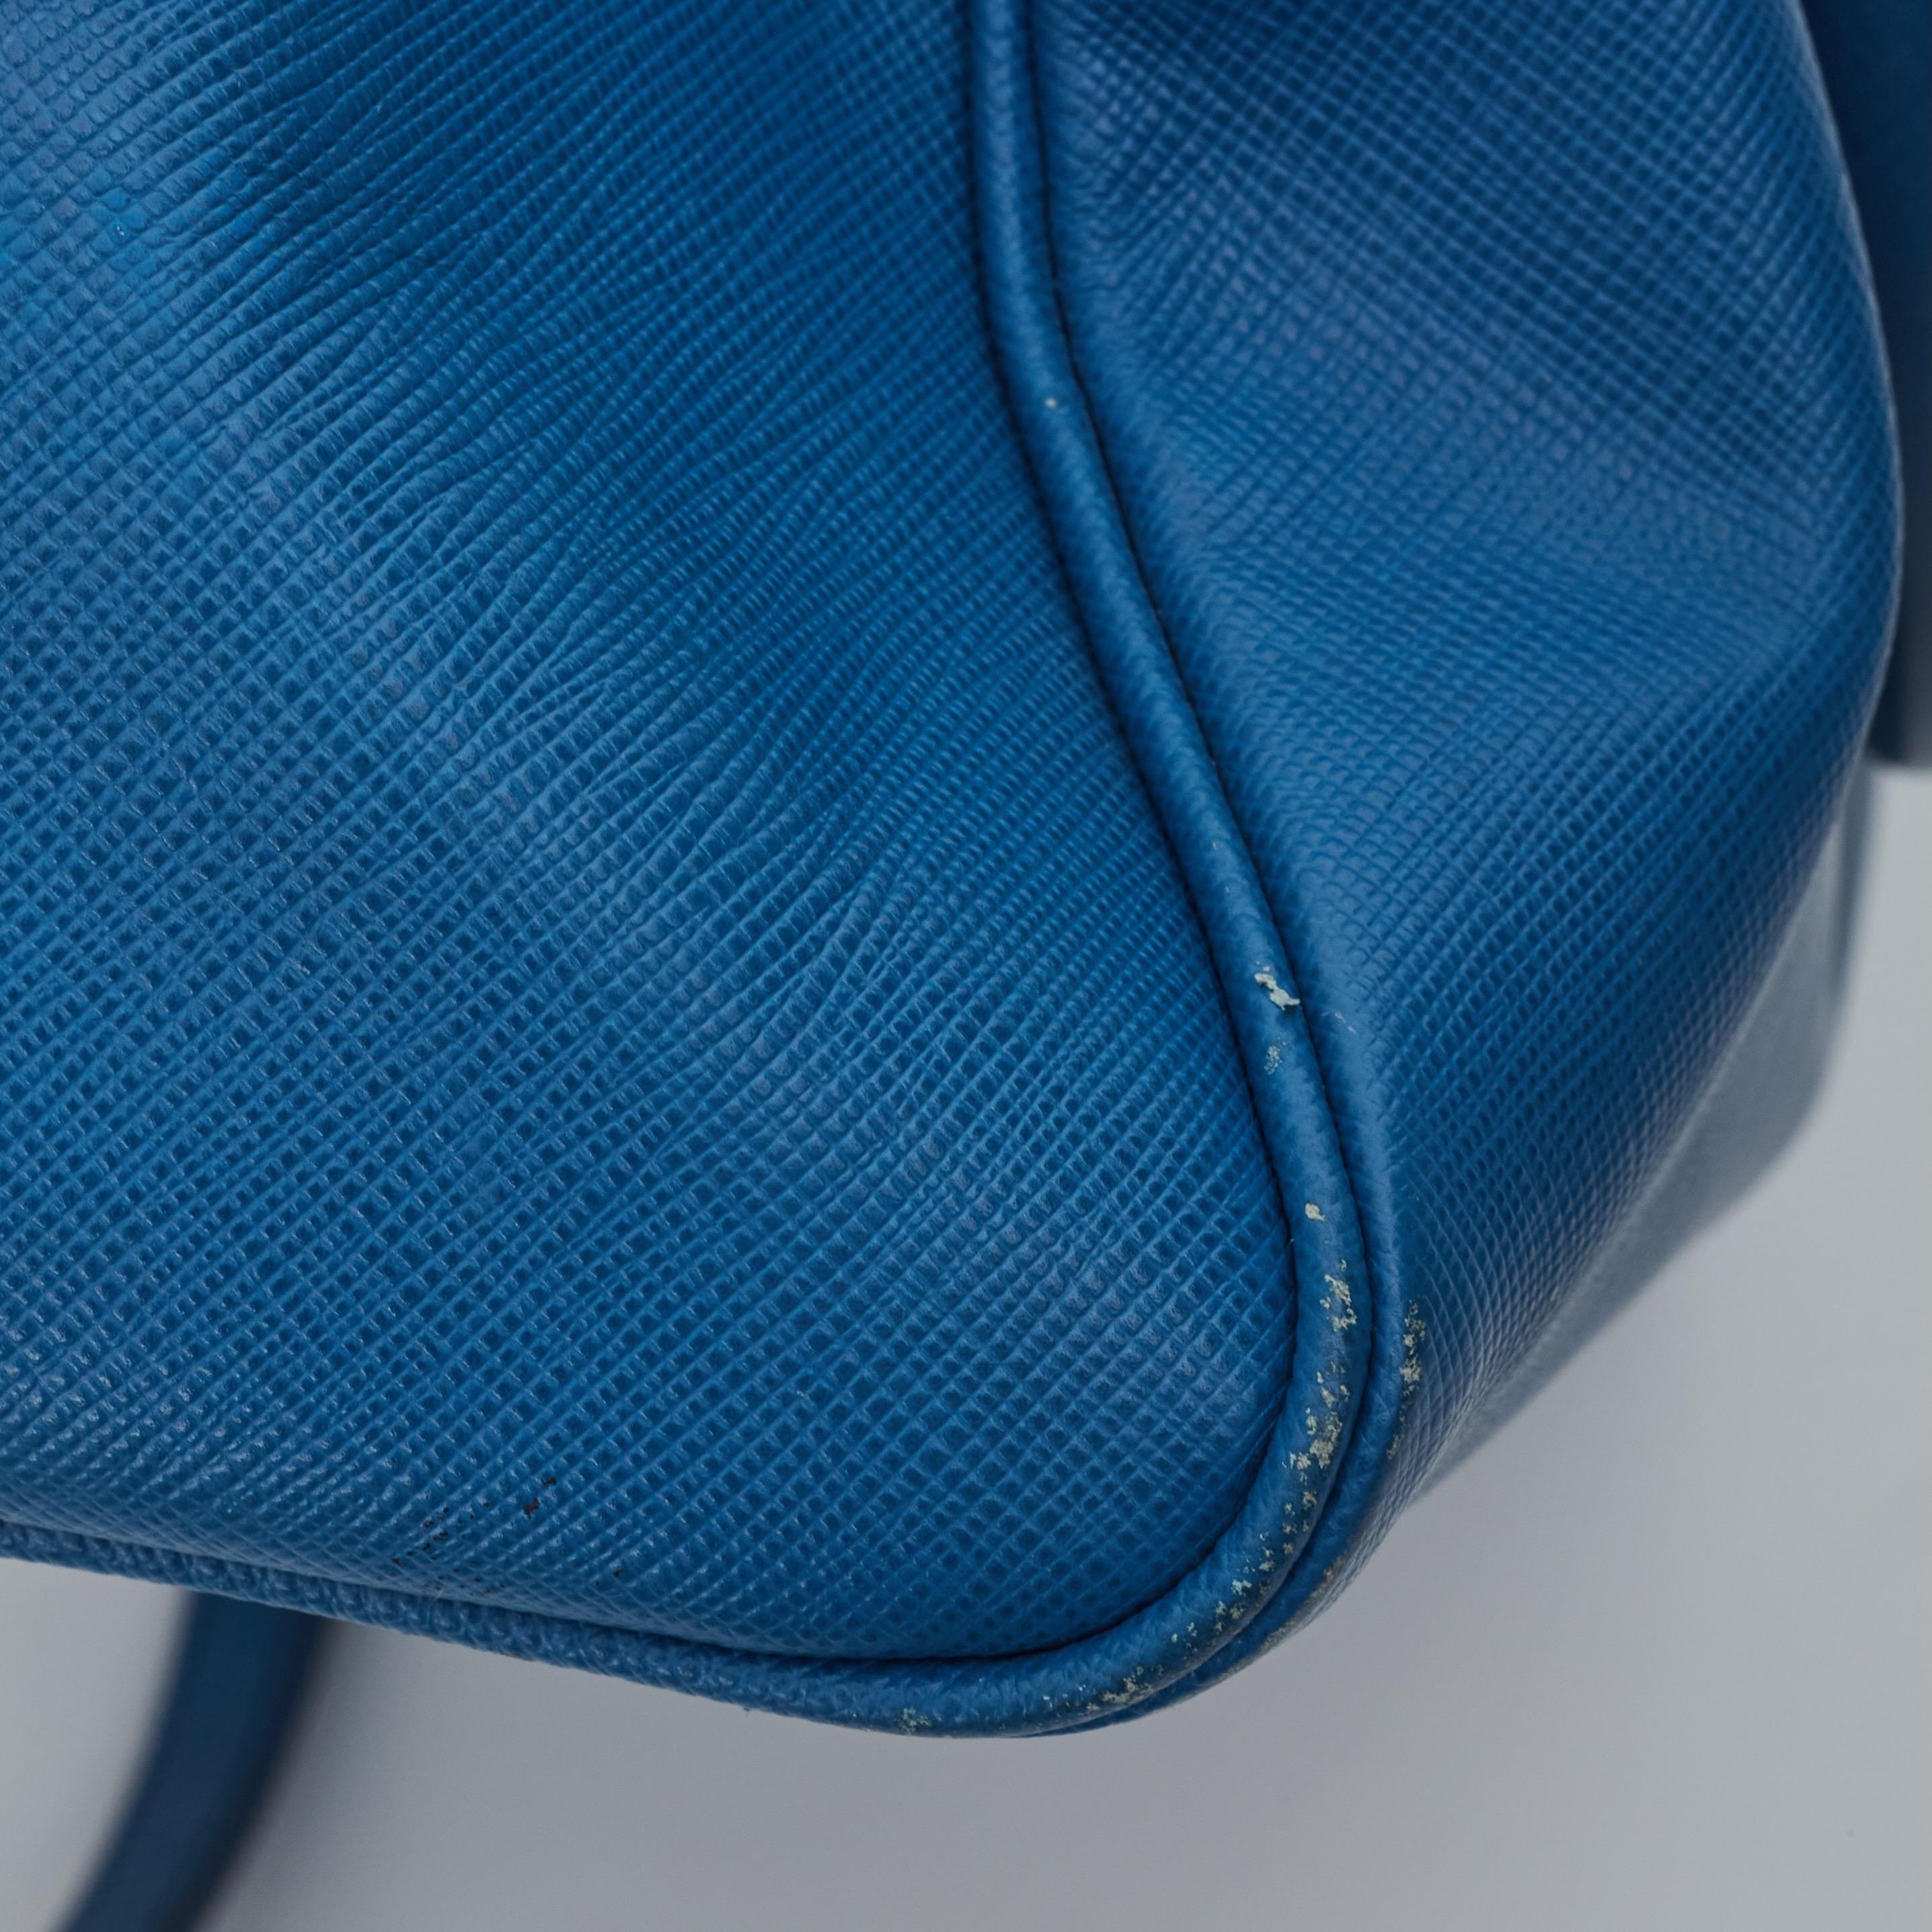 Prada Saffiano Leather Blue Bauletto Boston Bag Round For Sale 4